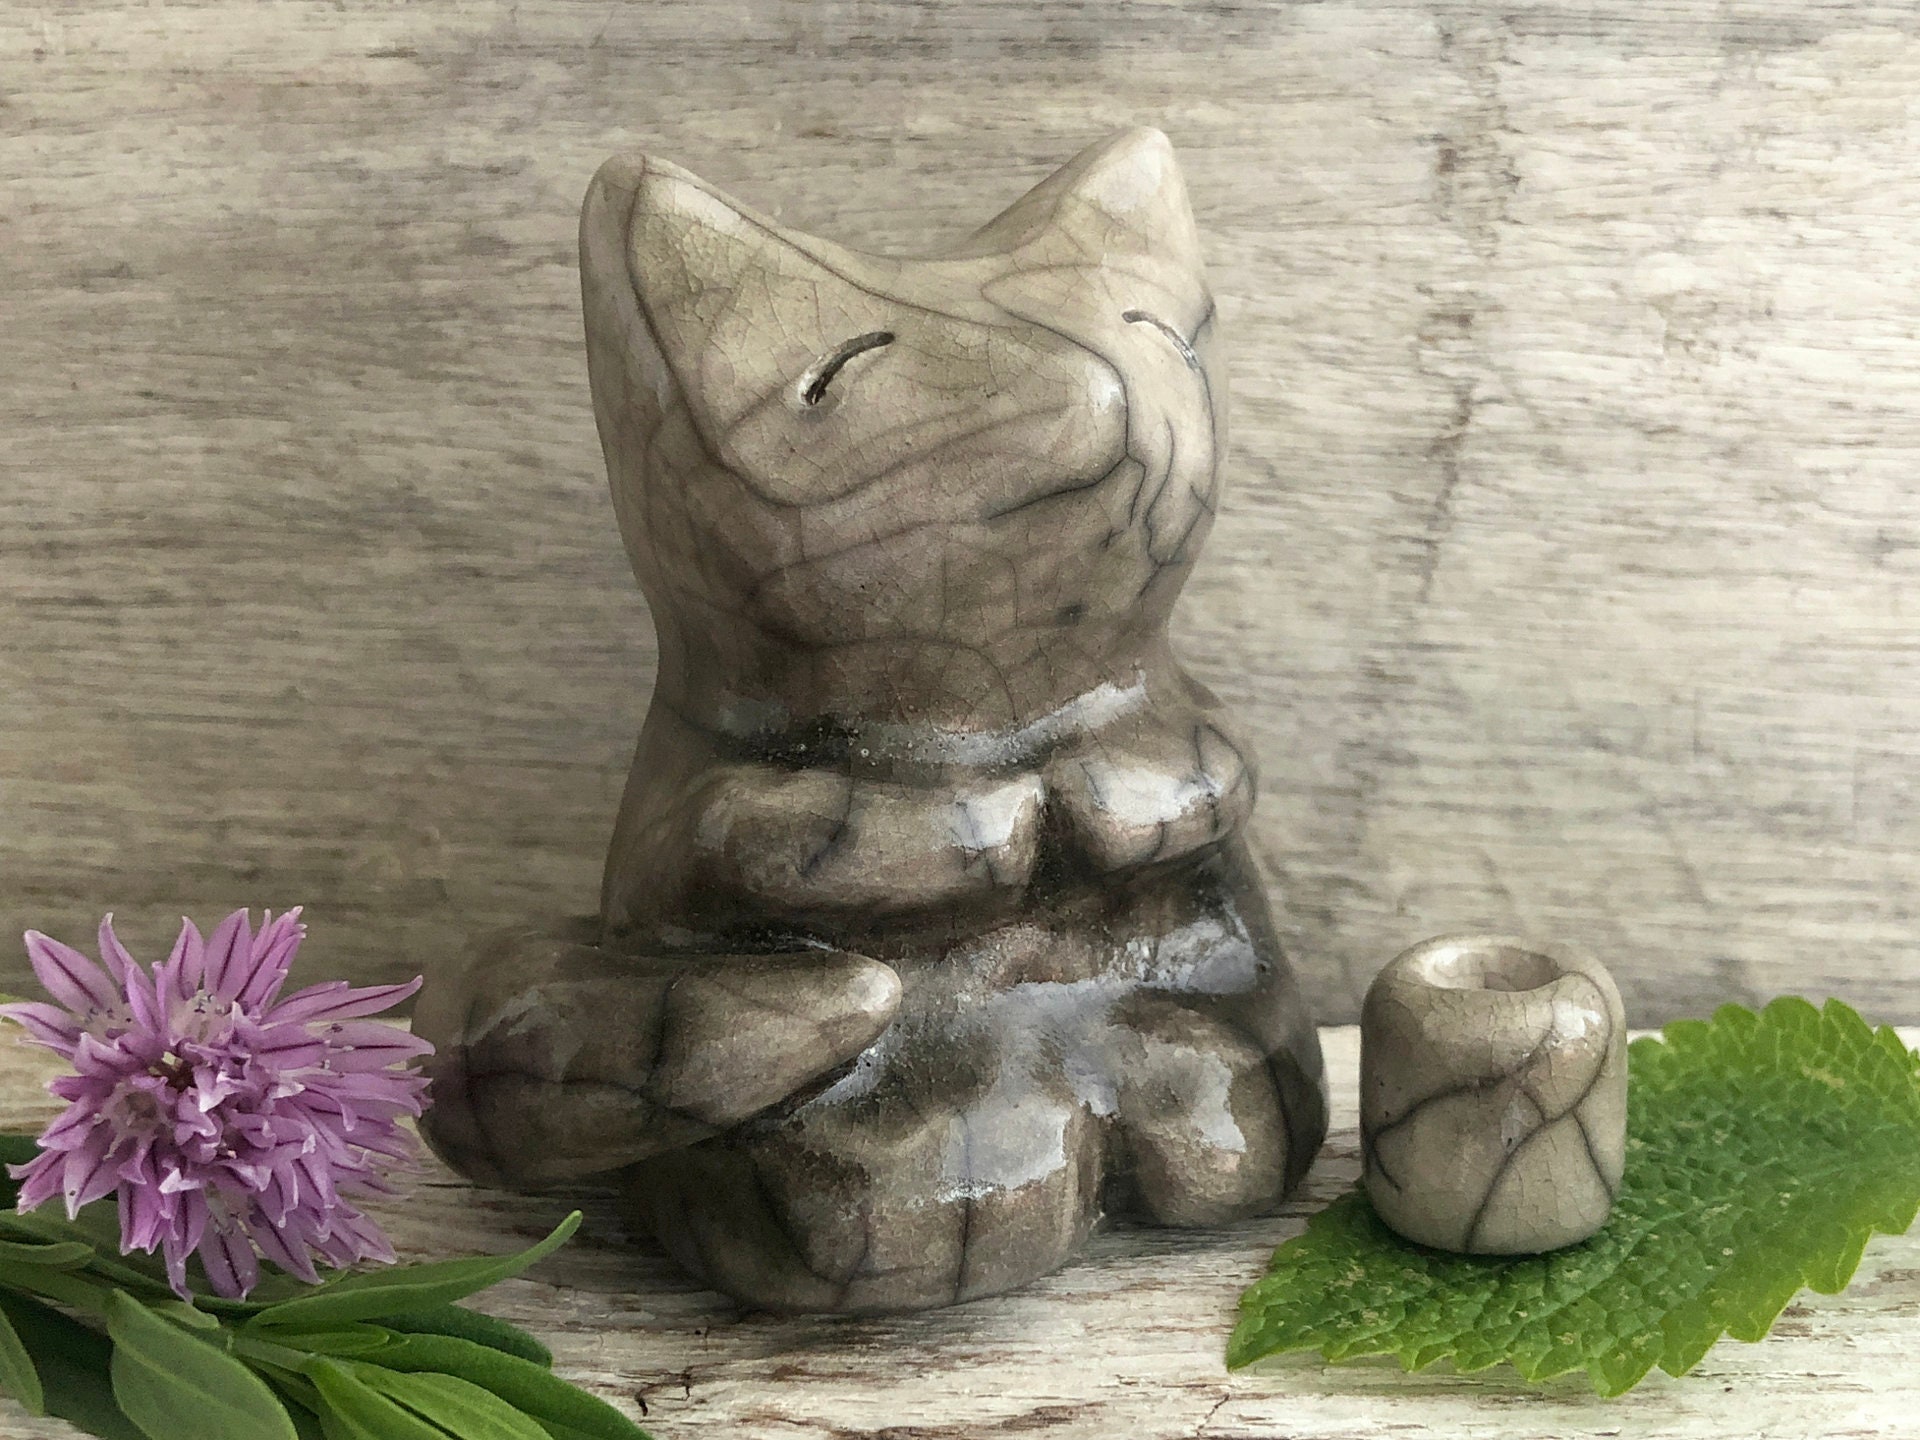  LILOVE Madera Inari Okami Dios de Fox Mensajero de la suerte  Mitología Estatua de Buda Escultura sintoísta Decoración del hogar : Hogar  y Cocina